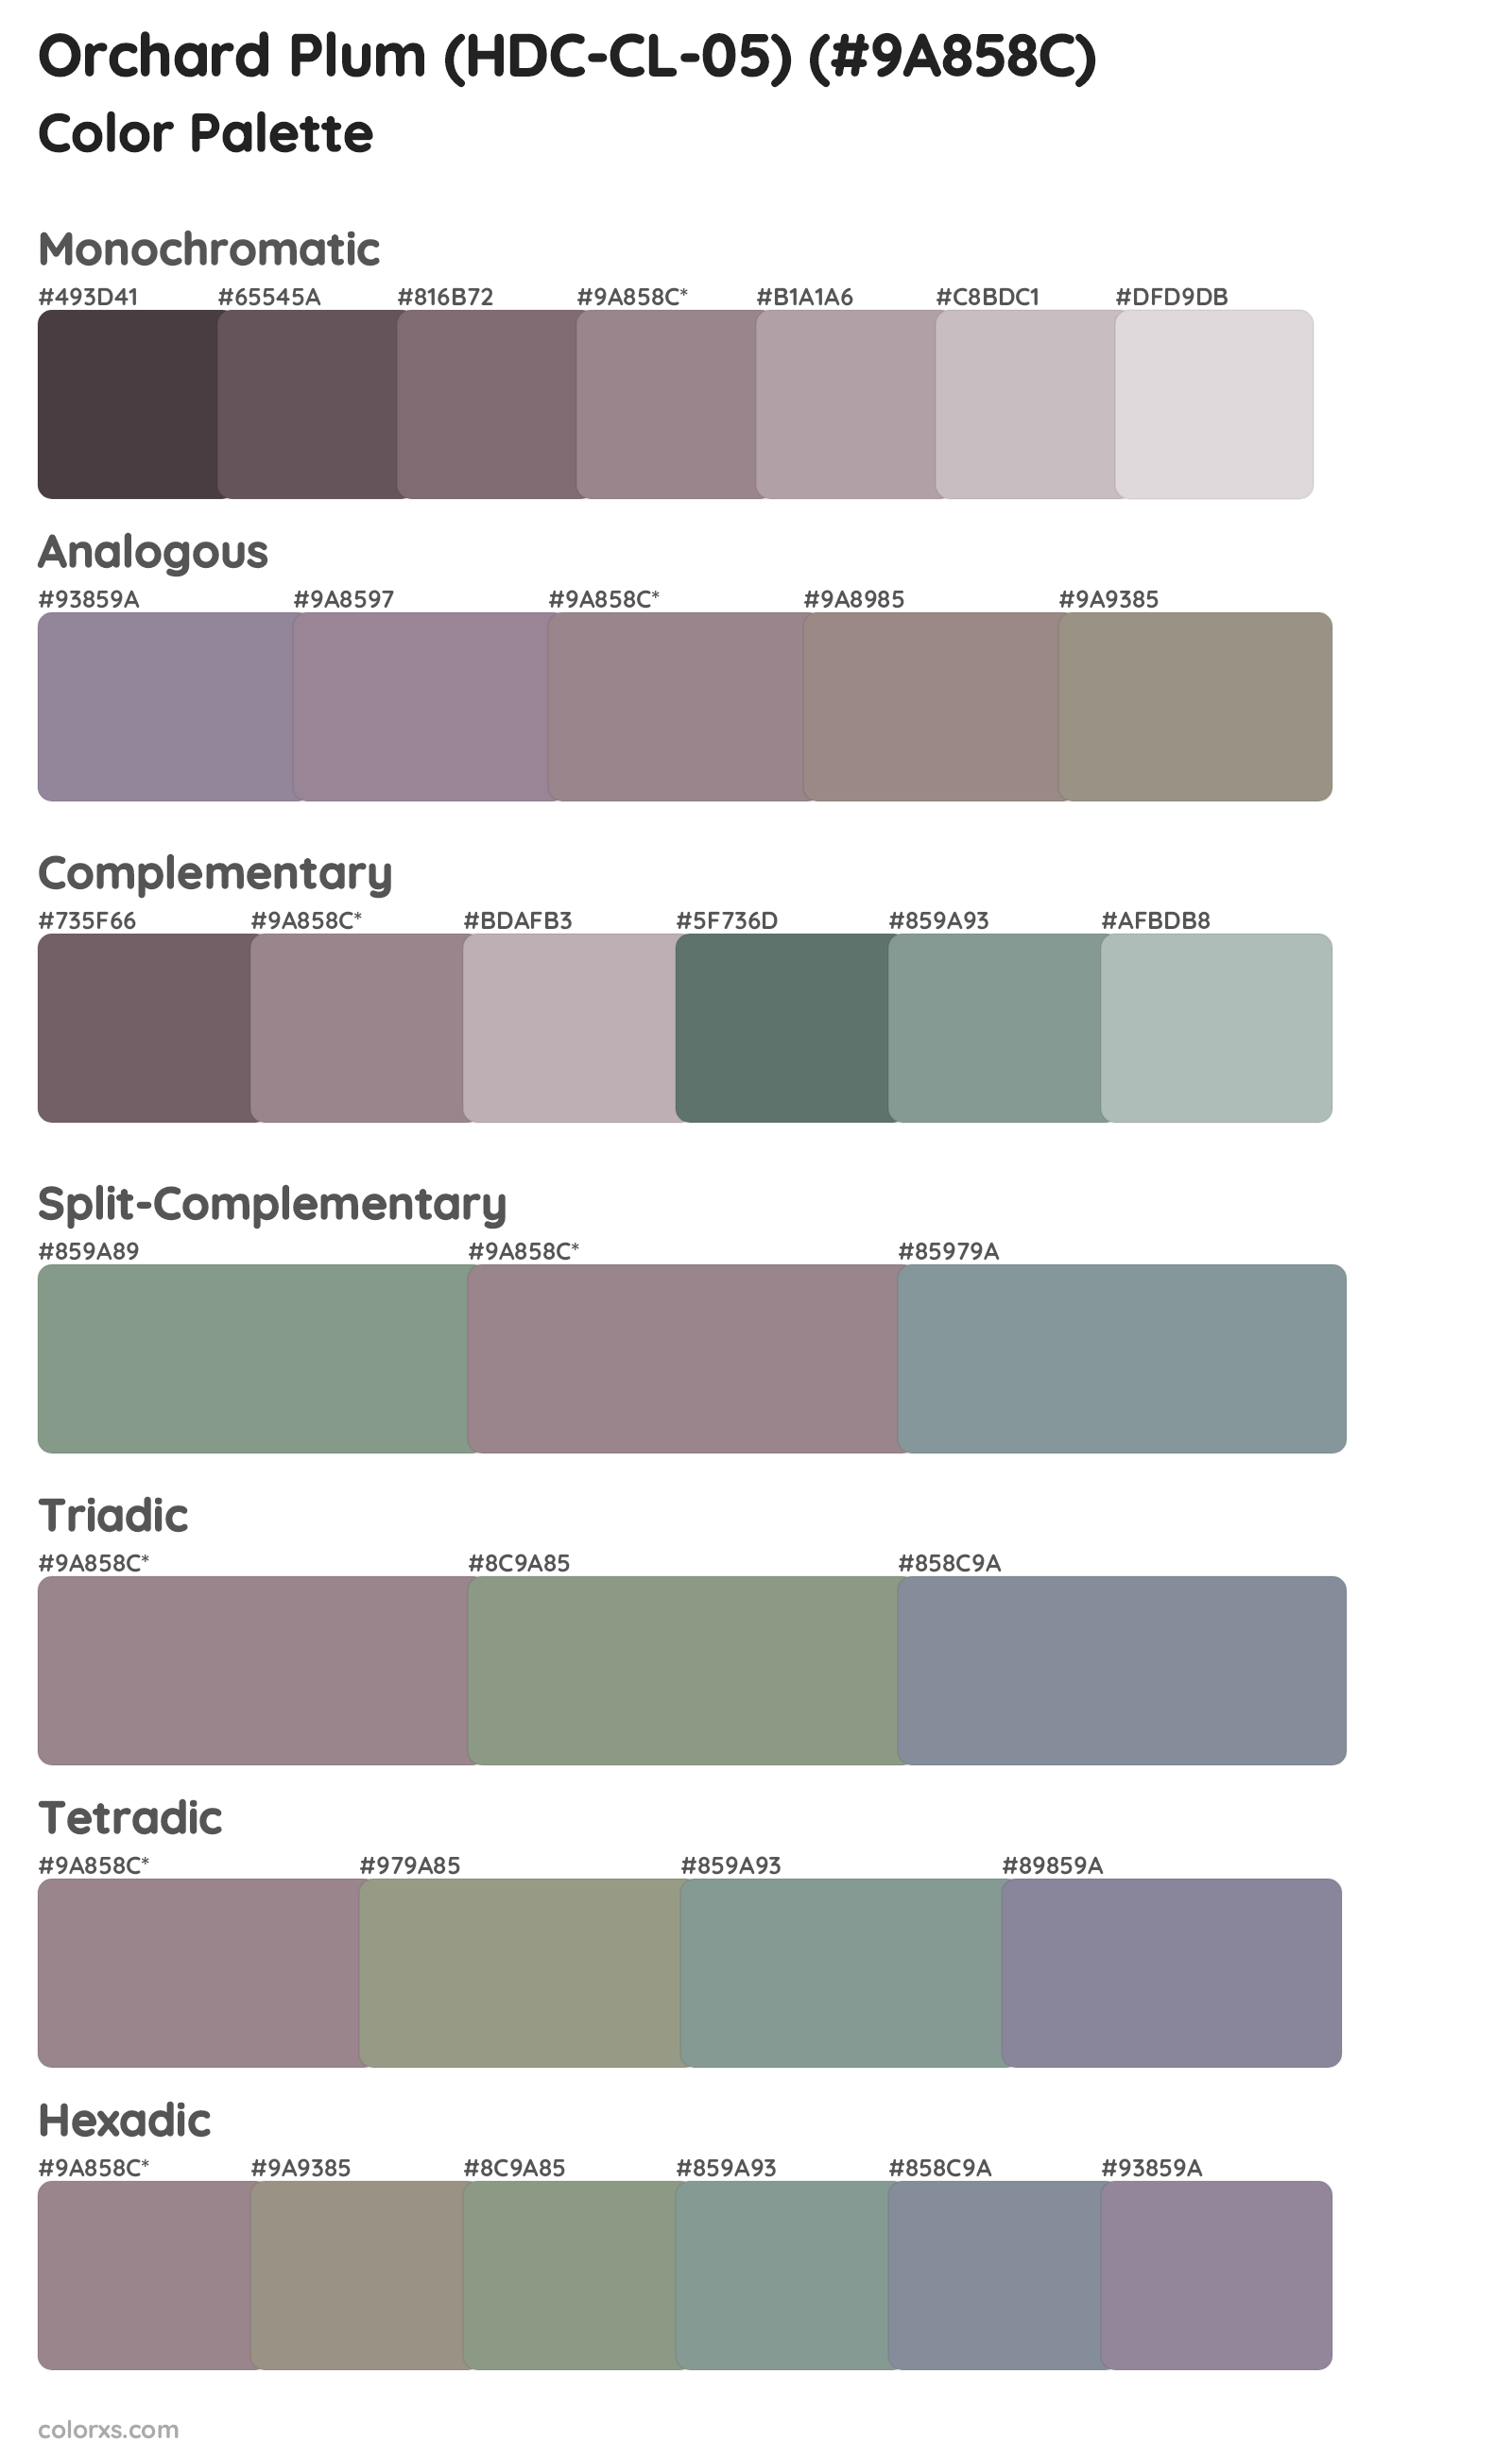 Orchard Plum (HDC-CL-05) Color Scheme Palettes